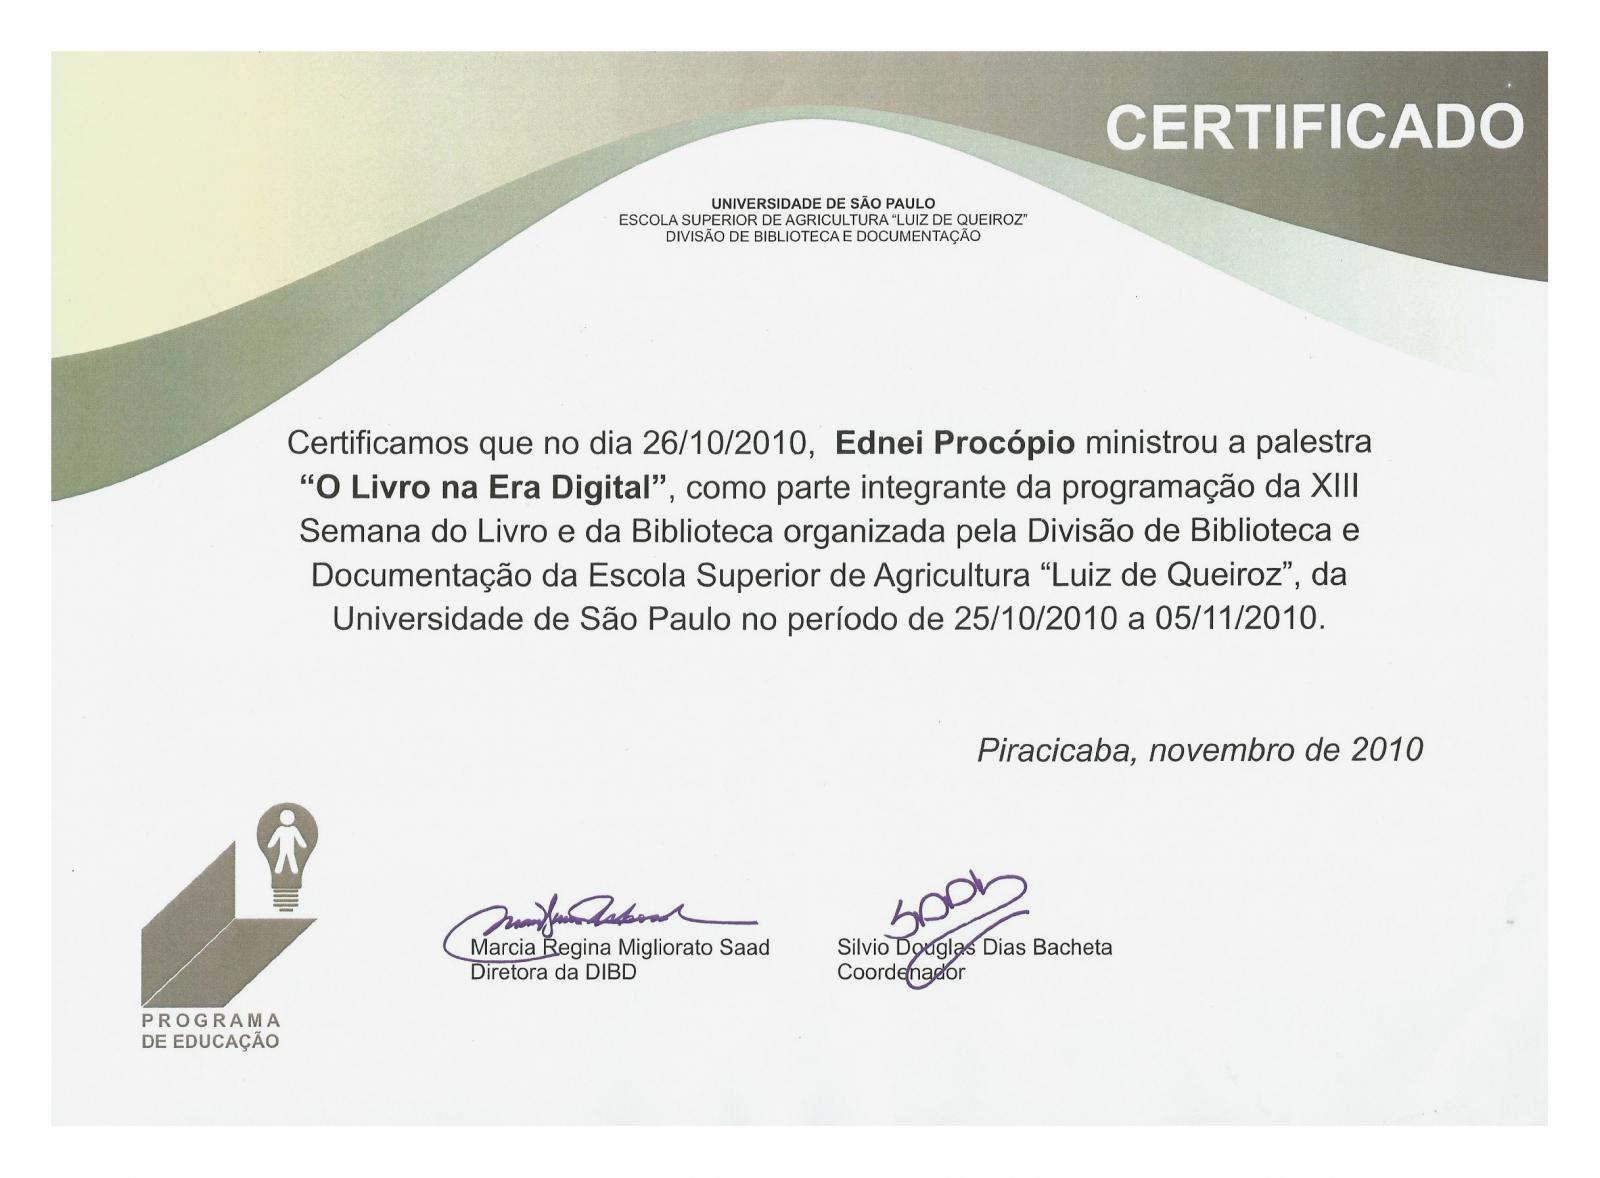 Certificado emitido pela Divisão e Documentação da Escola Superior de Agricultura Luiz Queiroz (ESALQ), da Universidade de São Paulo (USP) por alestra ministrada por Ednei Procópio, no dia 26 de Outubro de 2010, durante a programação da Semana do Livro e da Biblioteca.